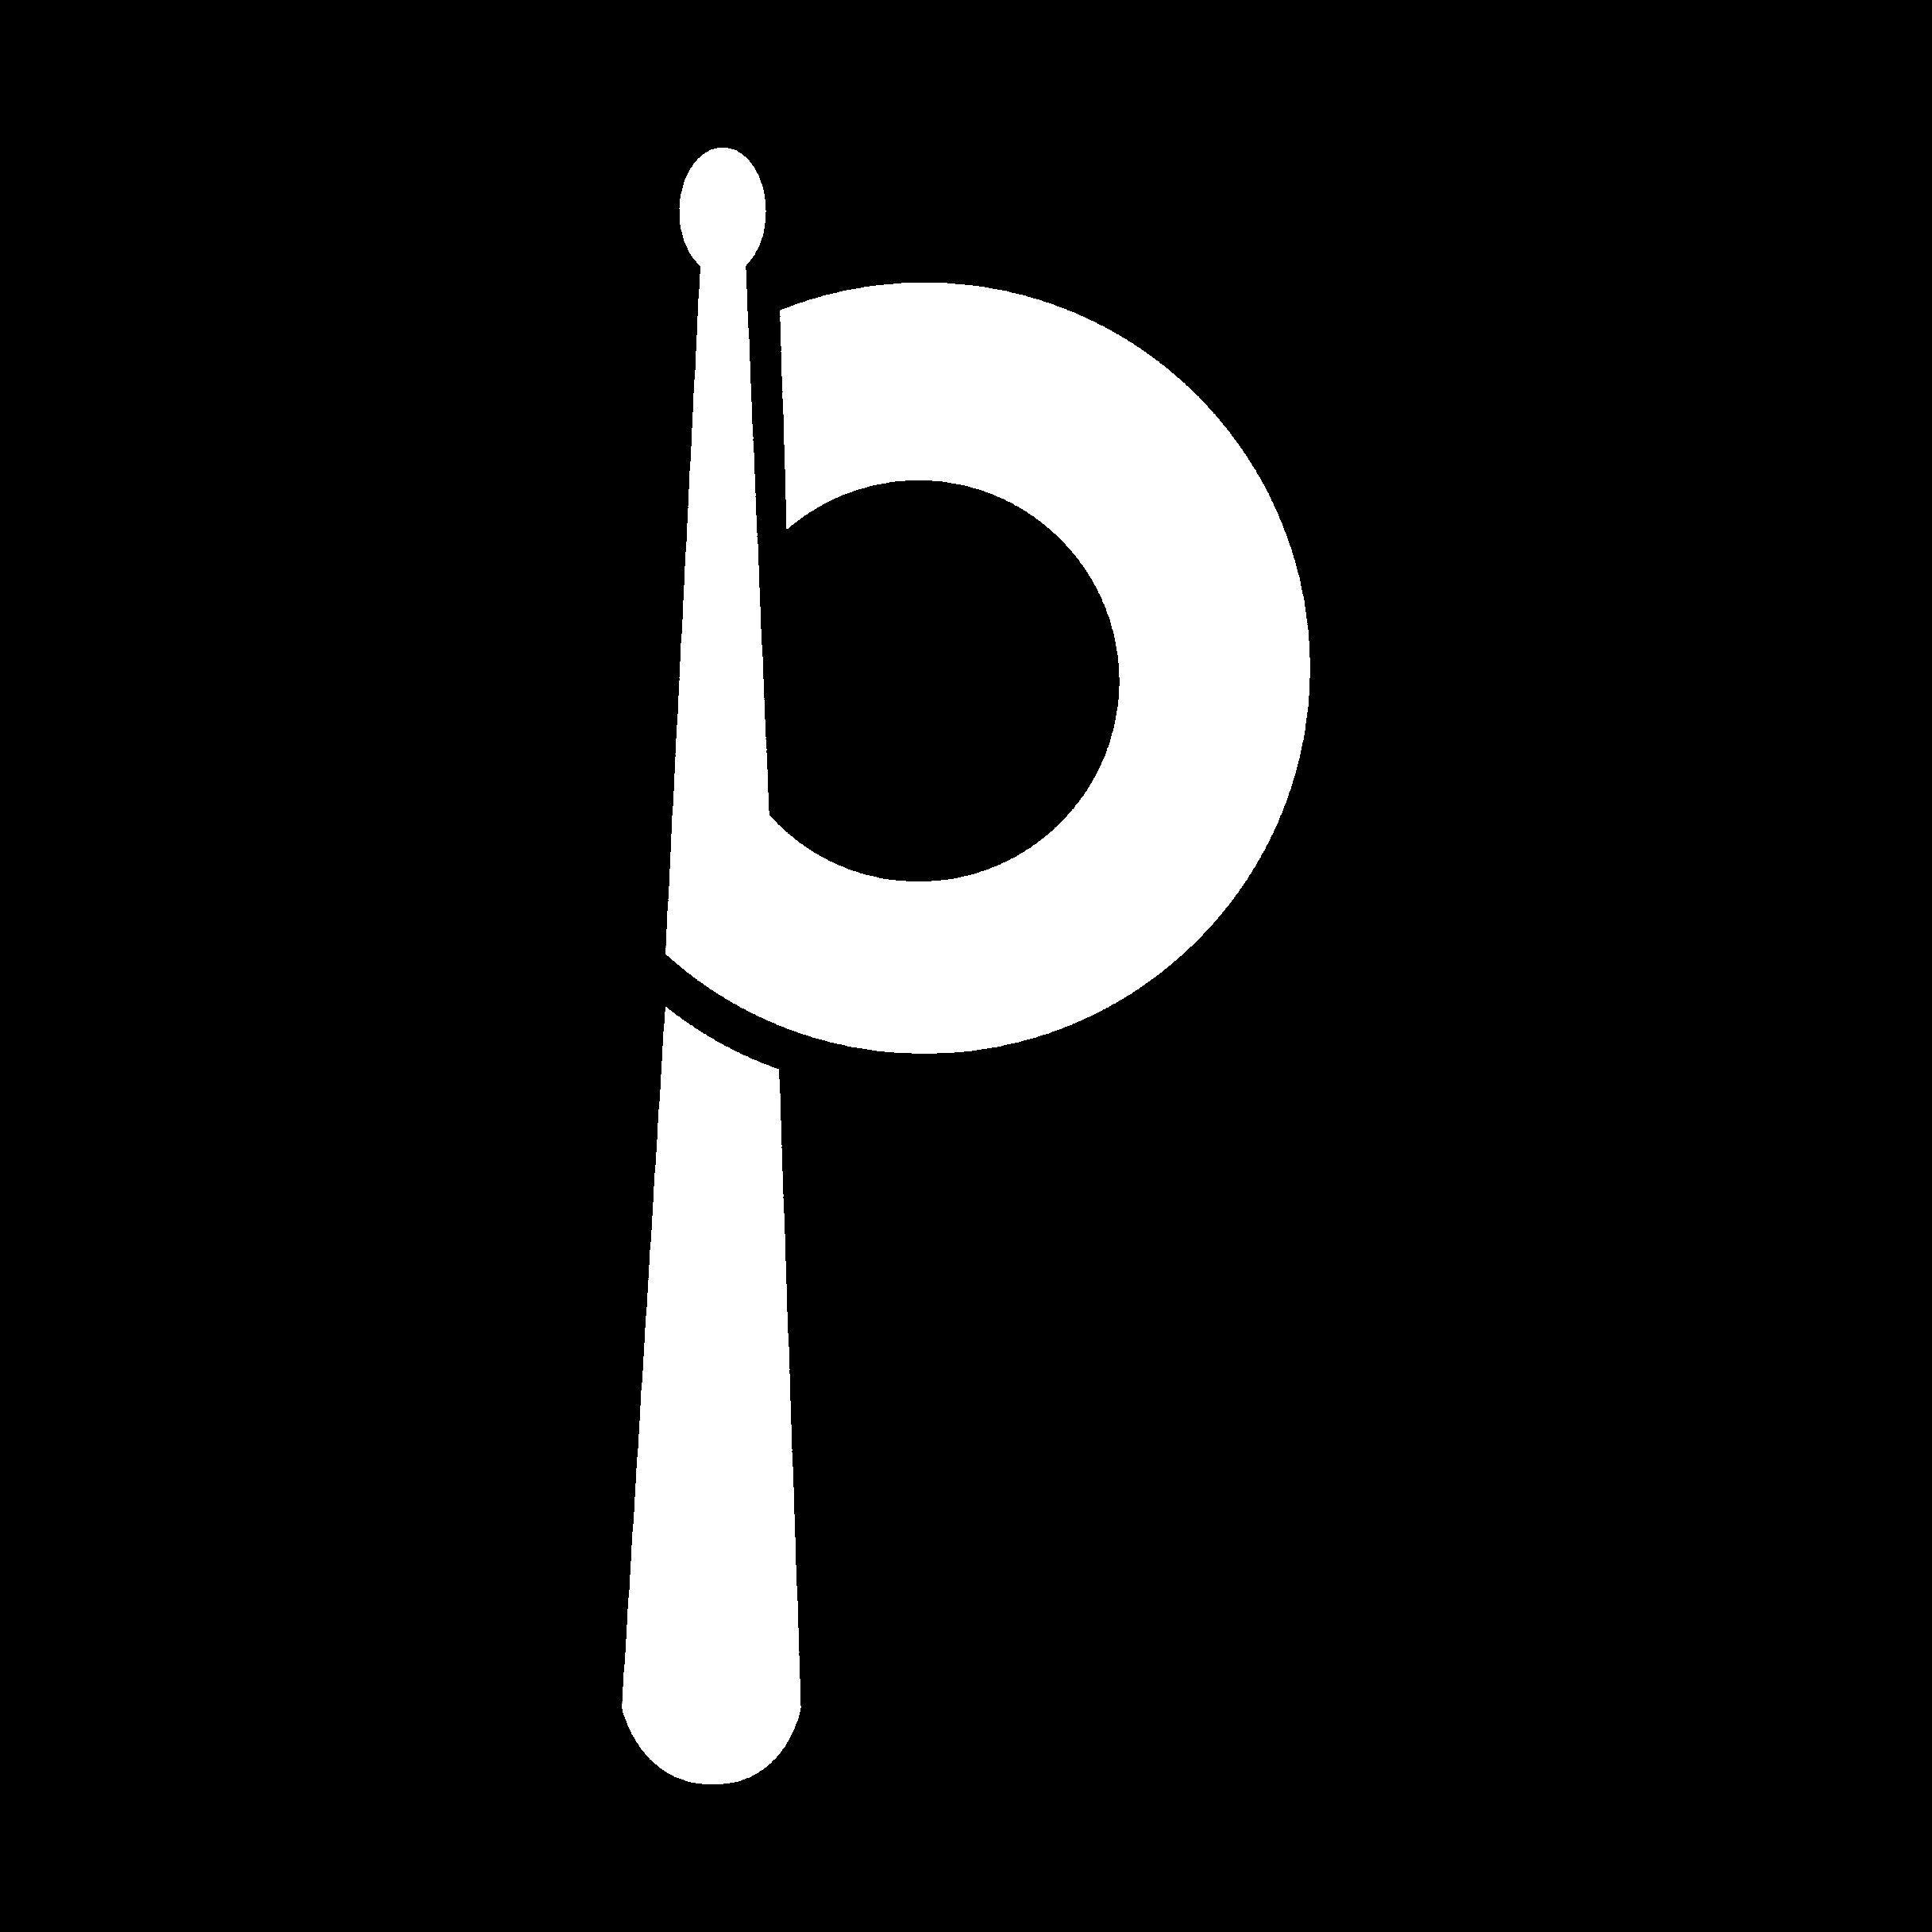 Drummer Logo - drummer logo IL PITO | bing | Drums logo, Music logo, Logos